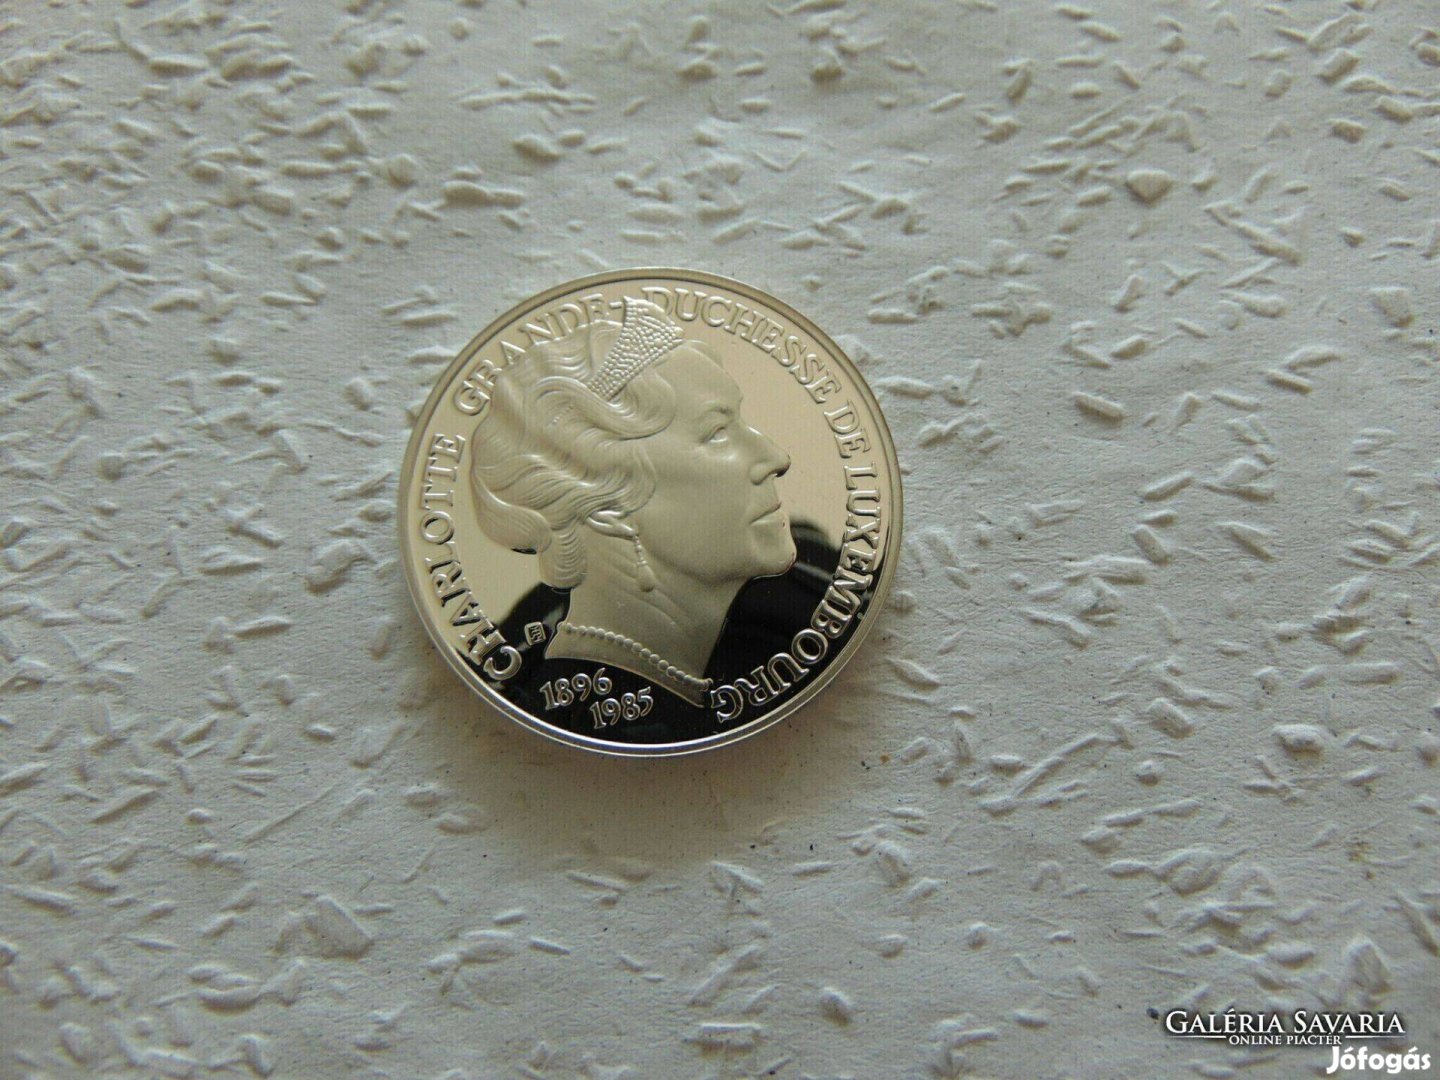 Luxemburg ezüst 25 ECU 1996 PP 23.05 gramm